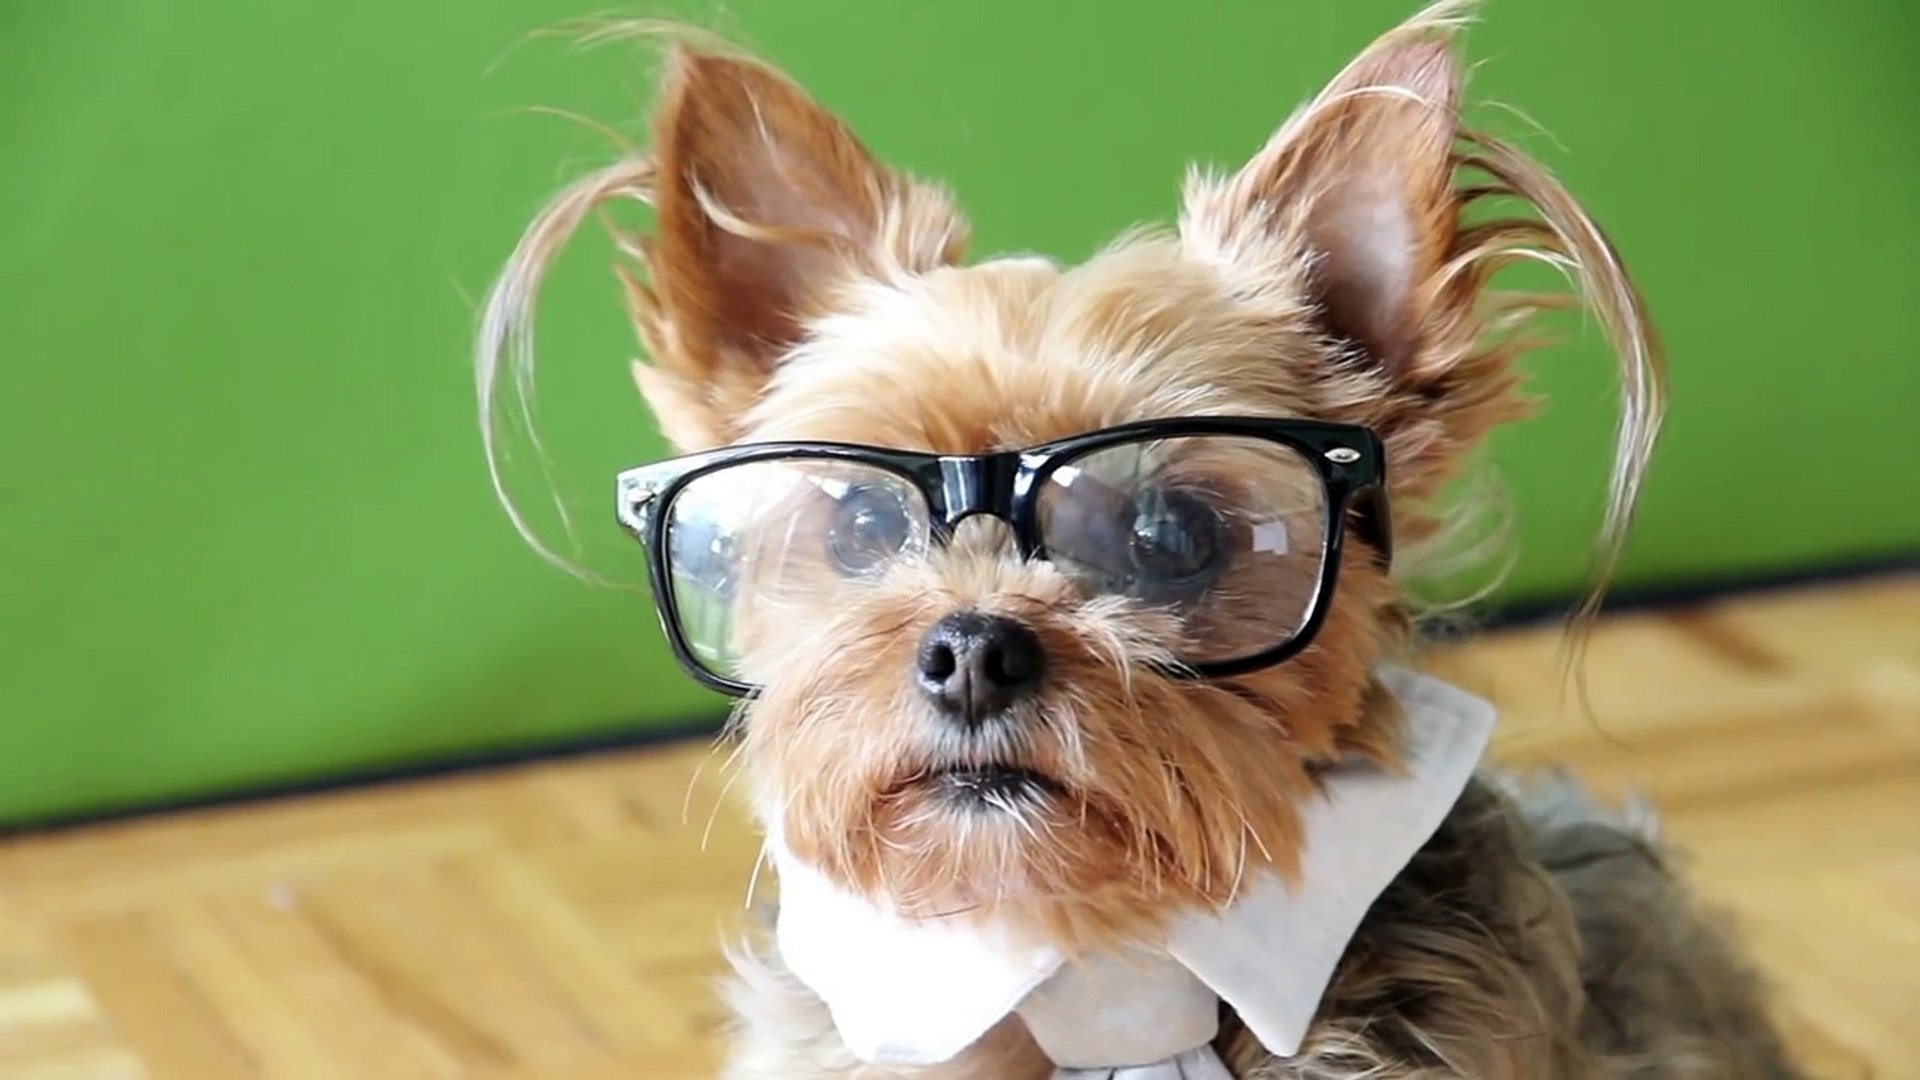 Hipster Dog: Funny Talking Dog!